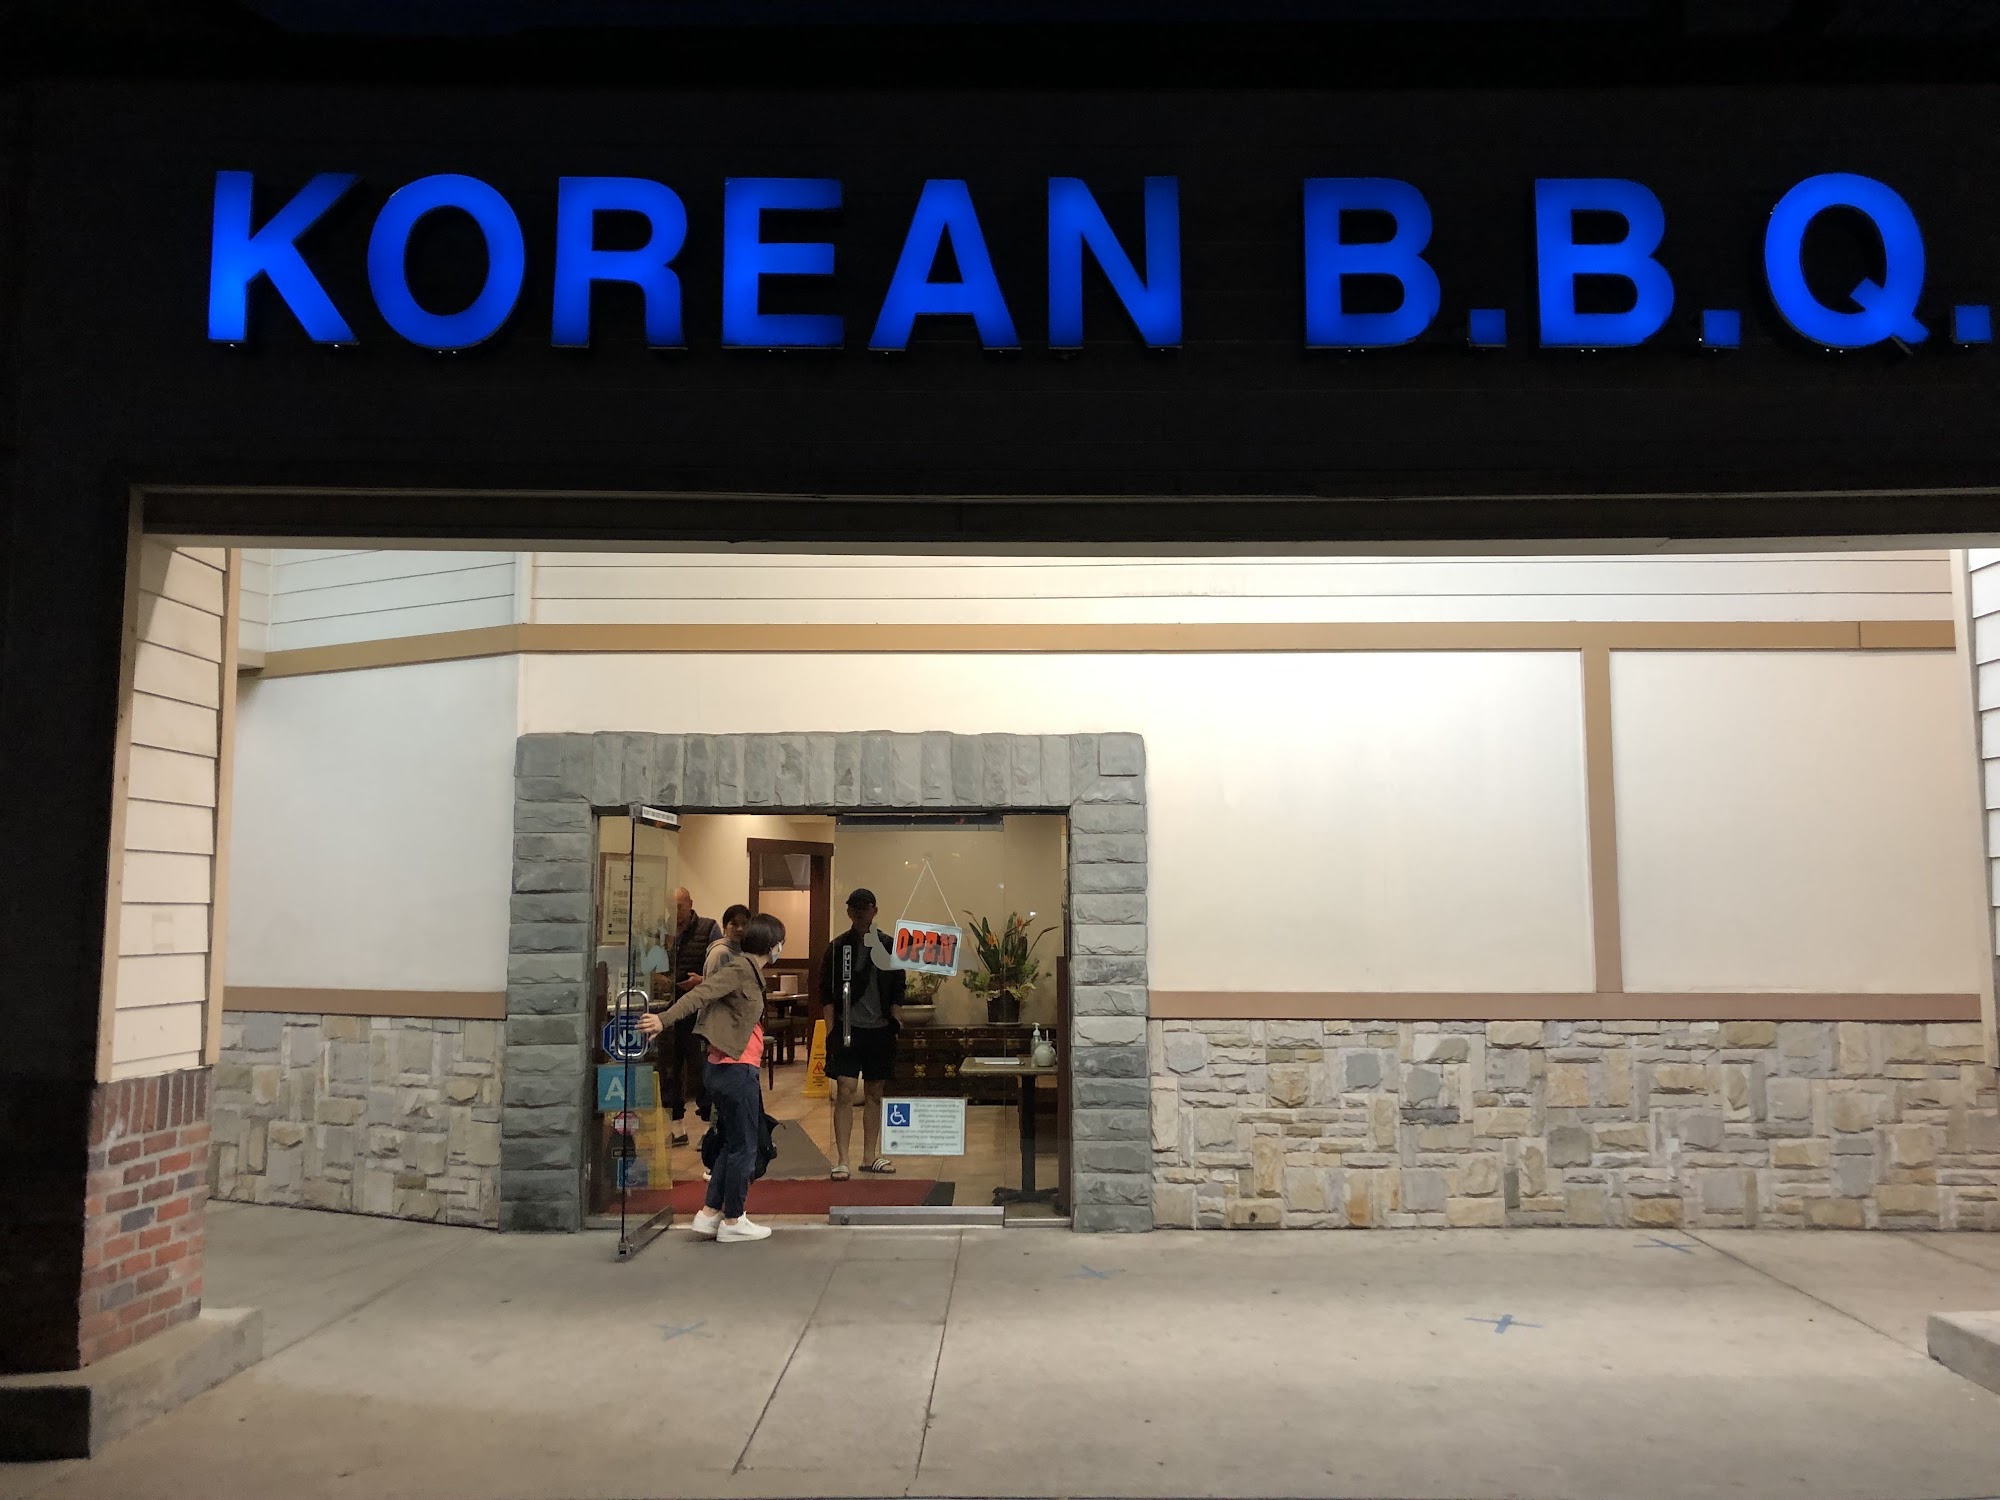 OGN Korean BBQ (Ong Ga Nae) (Rowland Heights, CA)